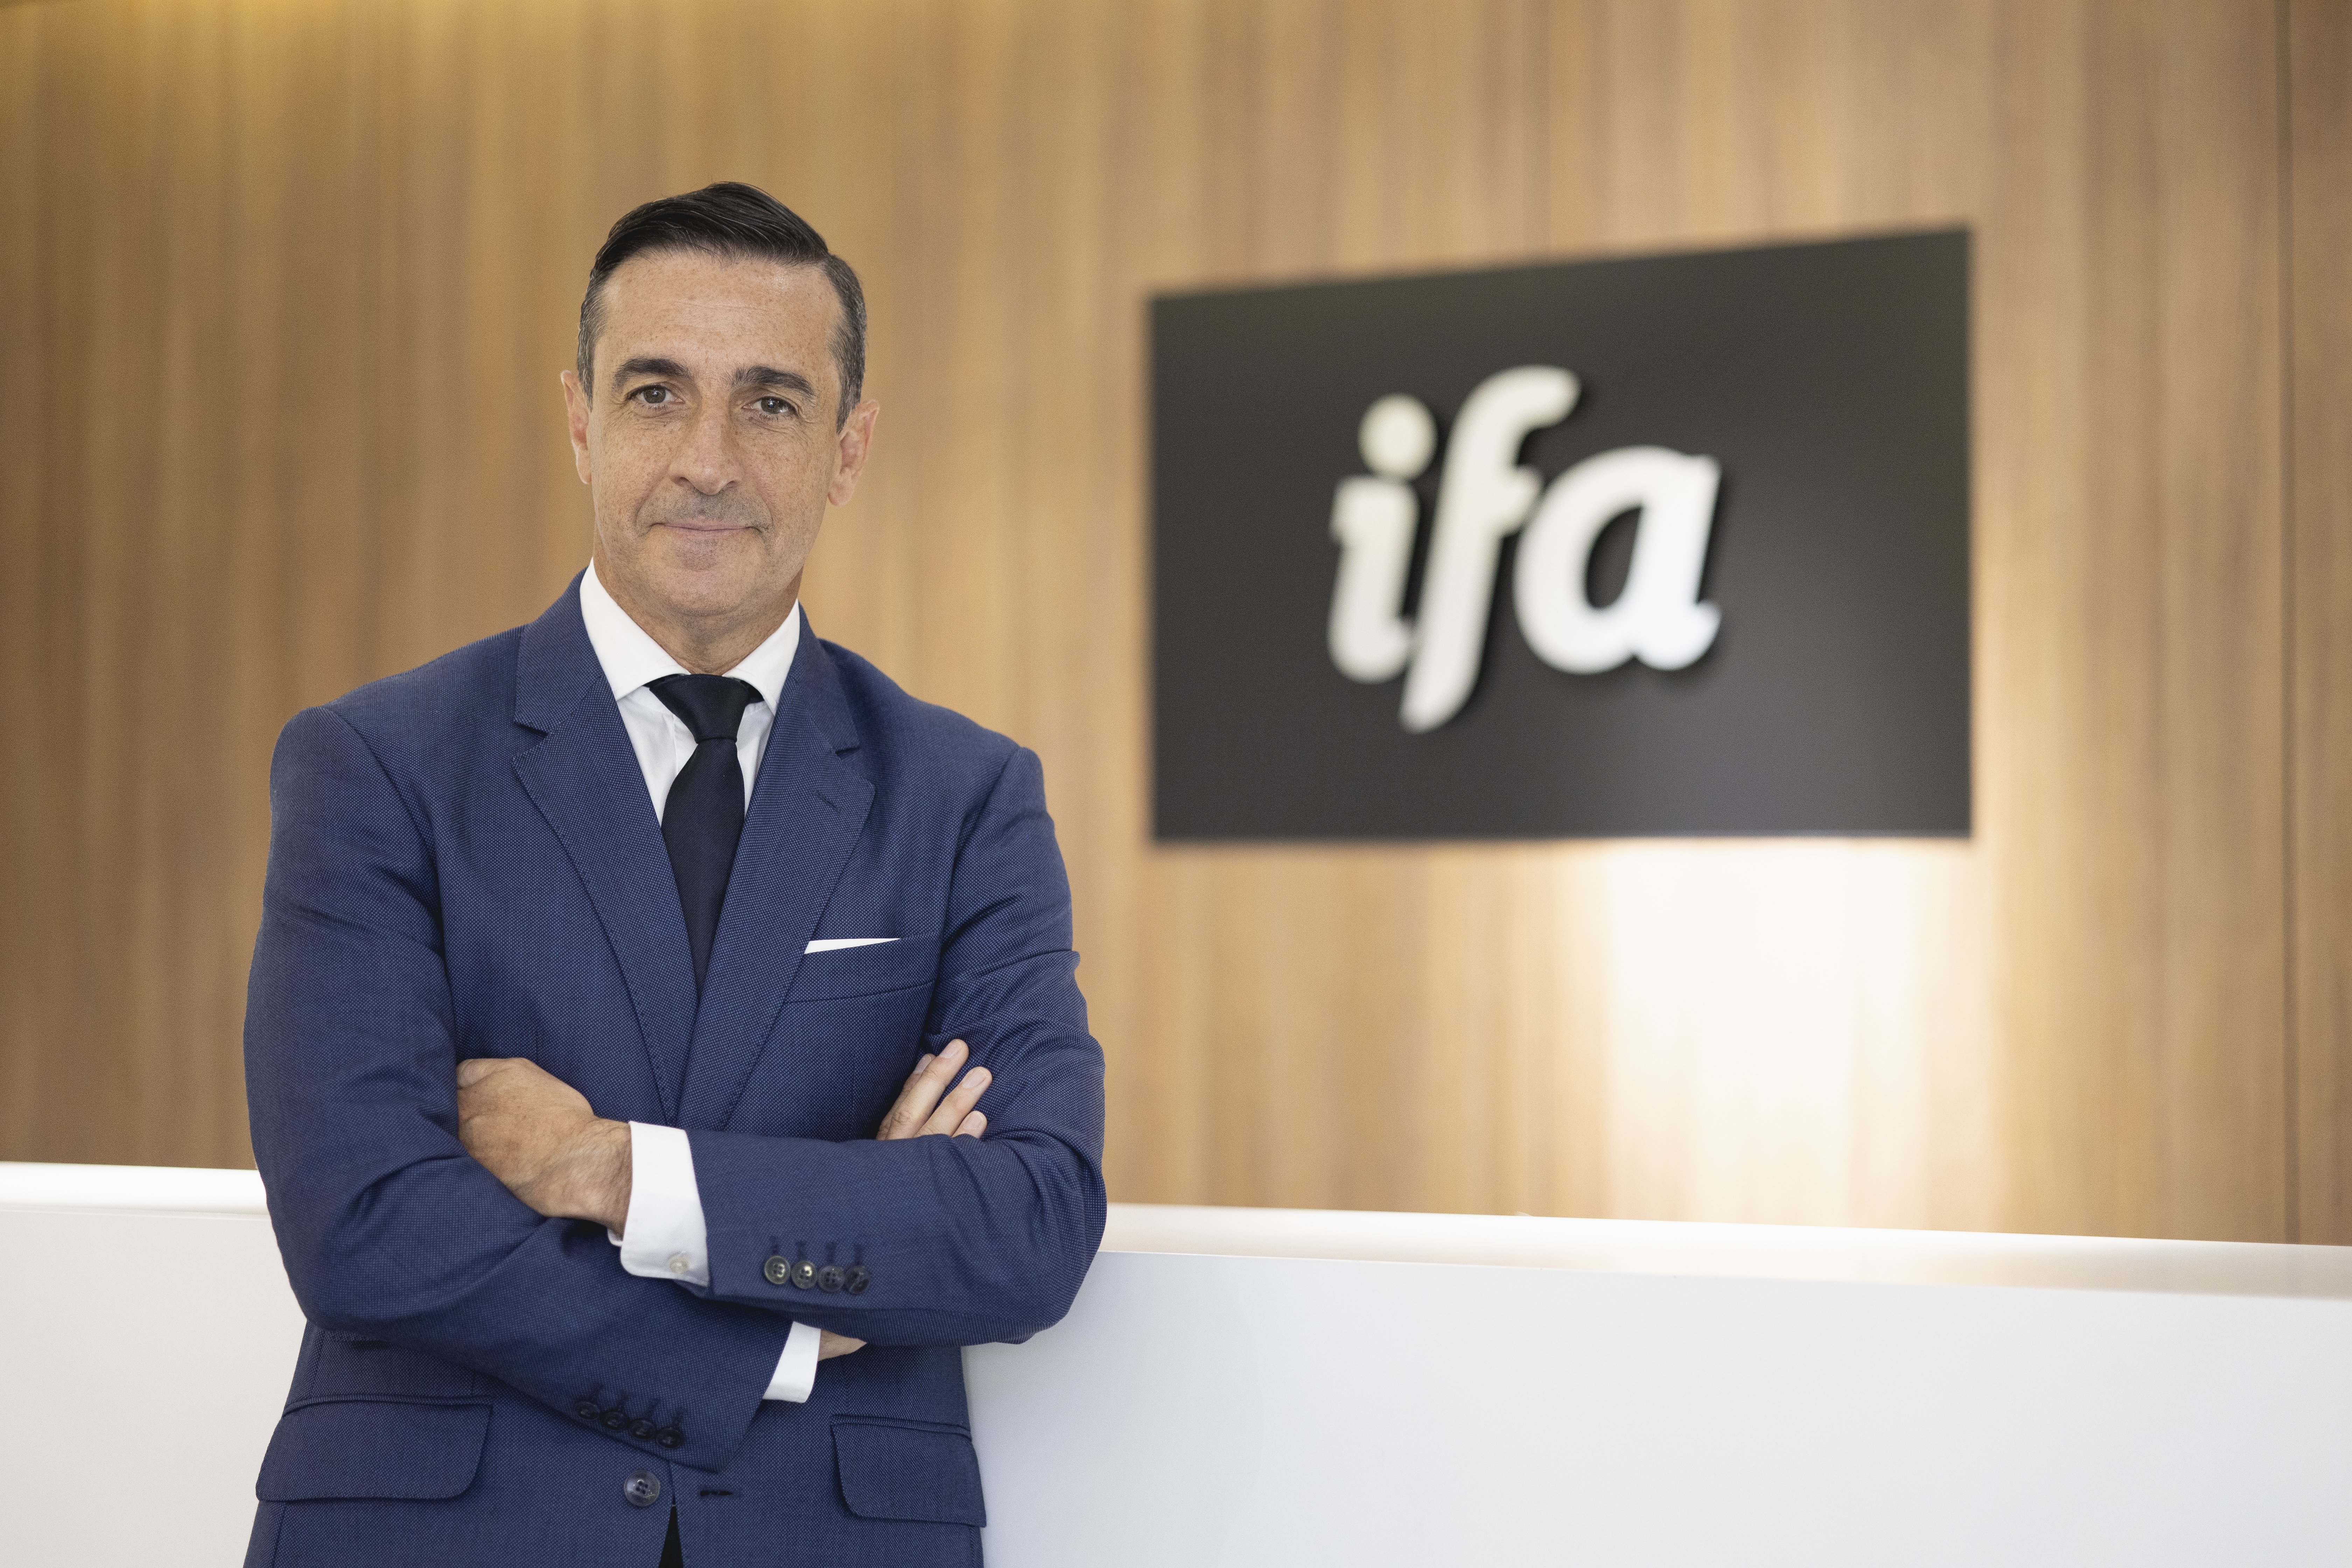 Juan Manuel Morales, director general de Grupo IFA